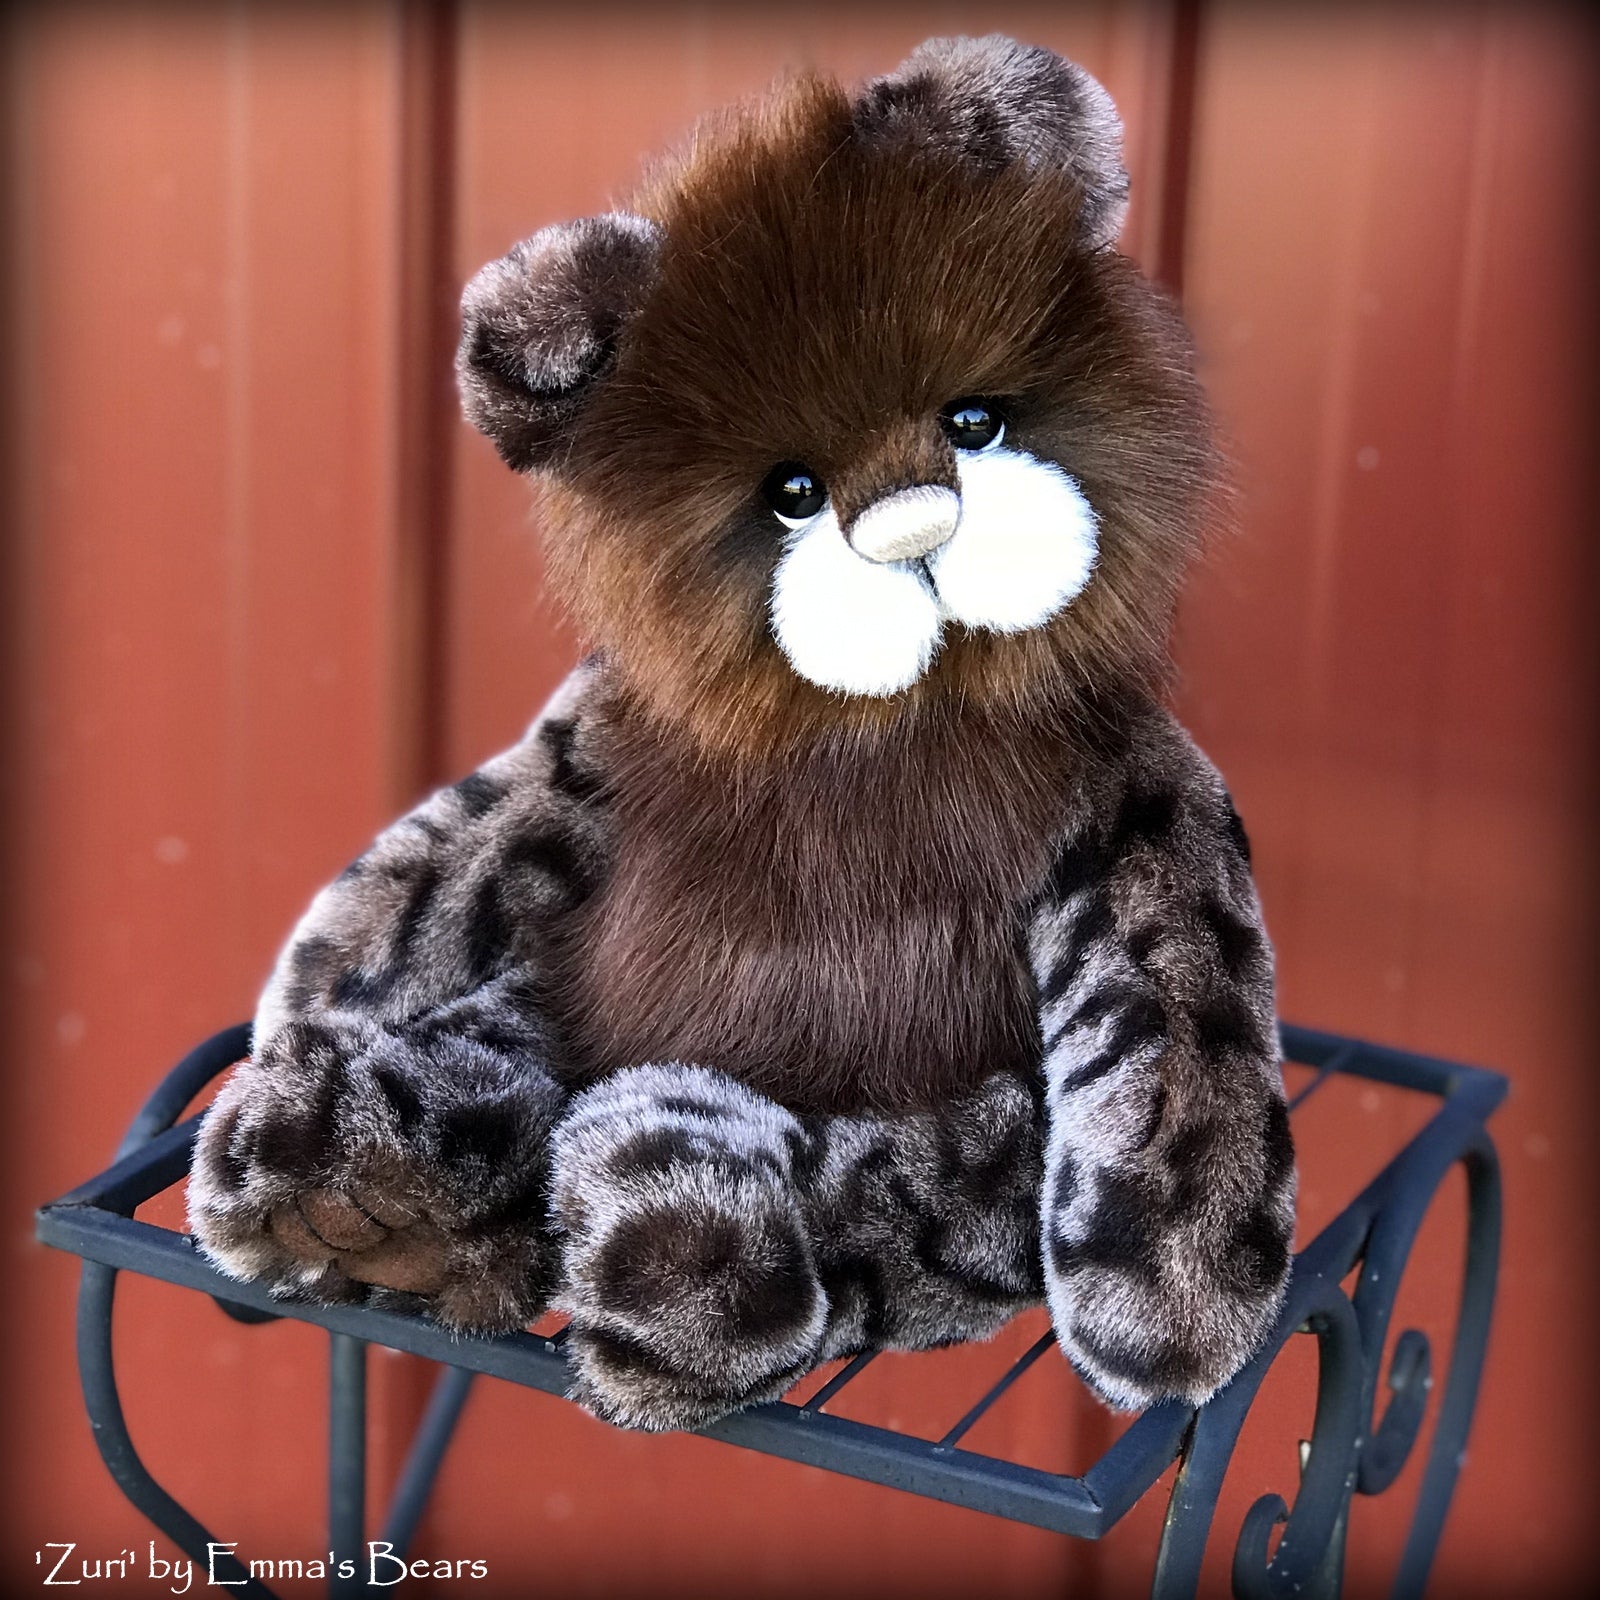 Zuri - 13" Tissavel faux fur artist bear by Emma's Bears - OOAK